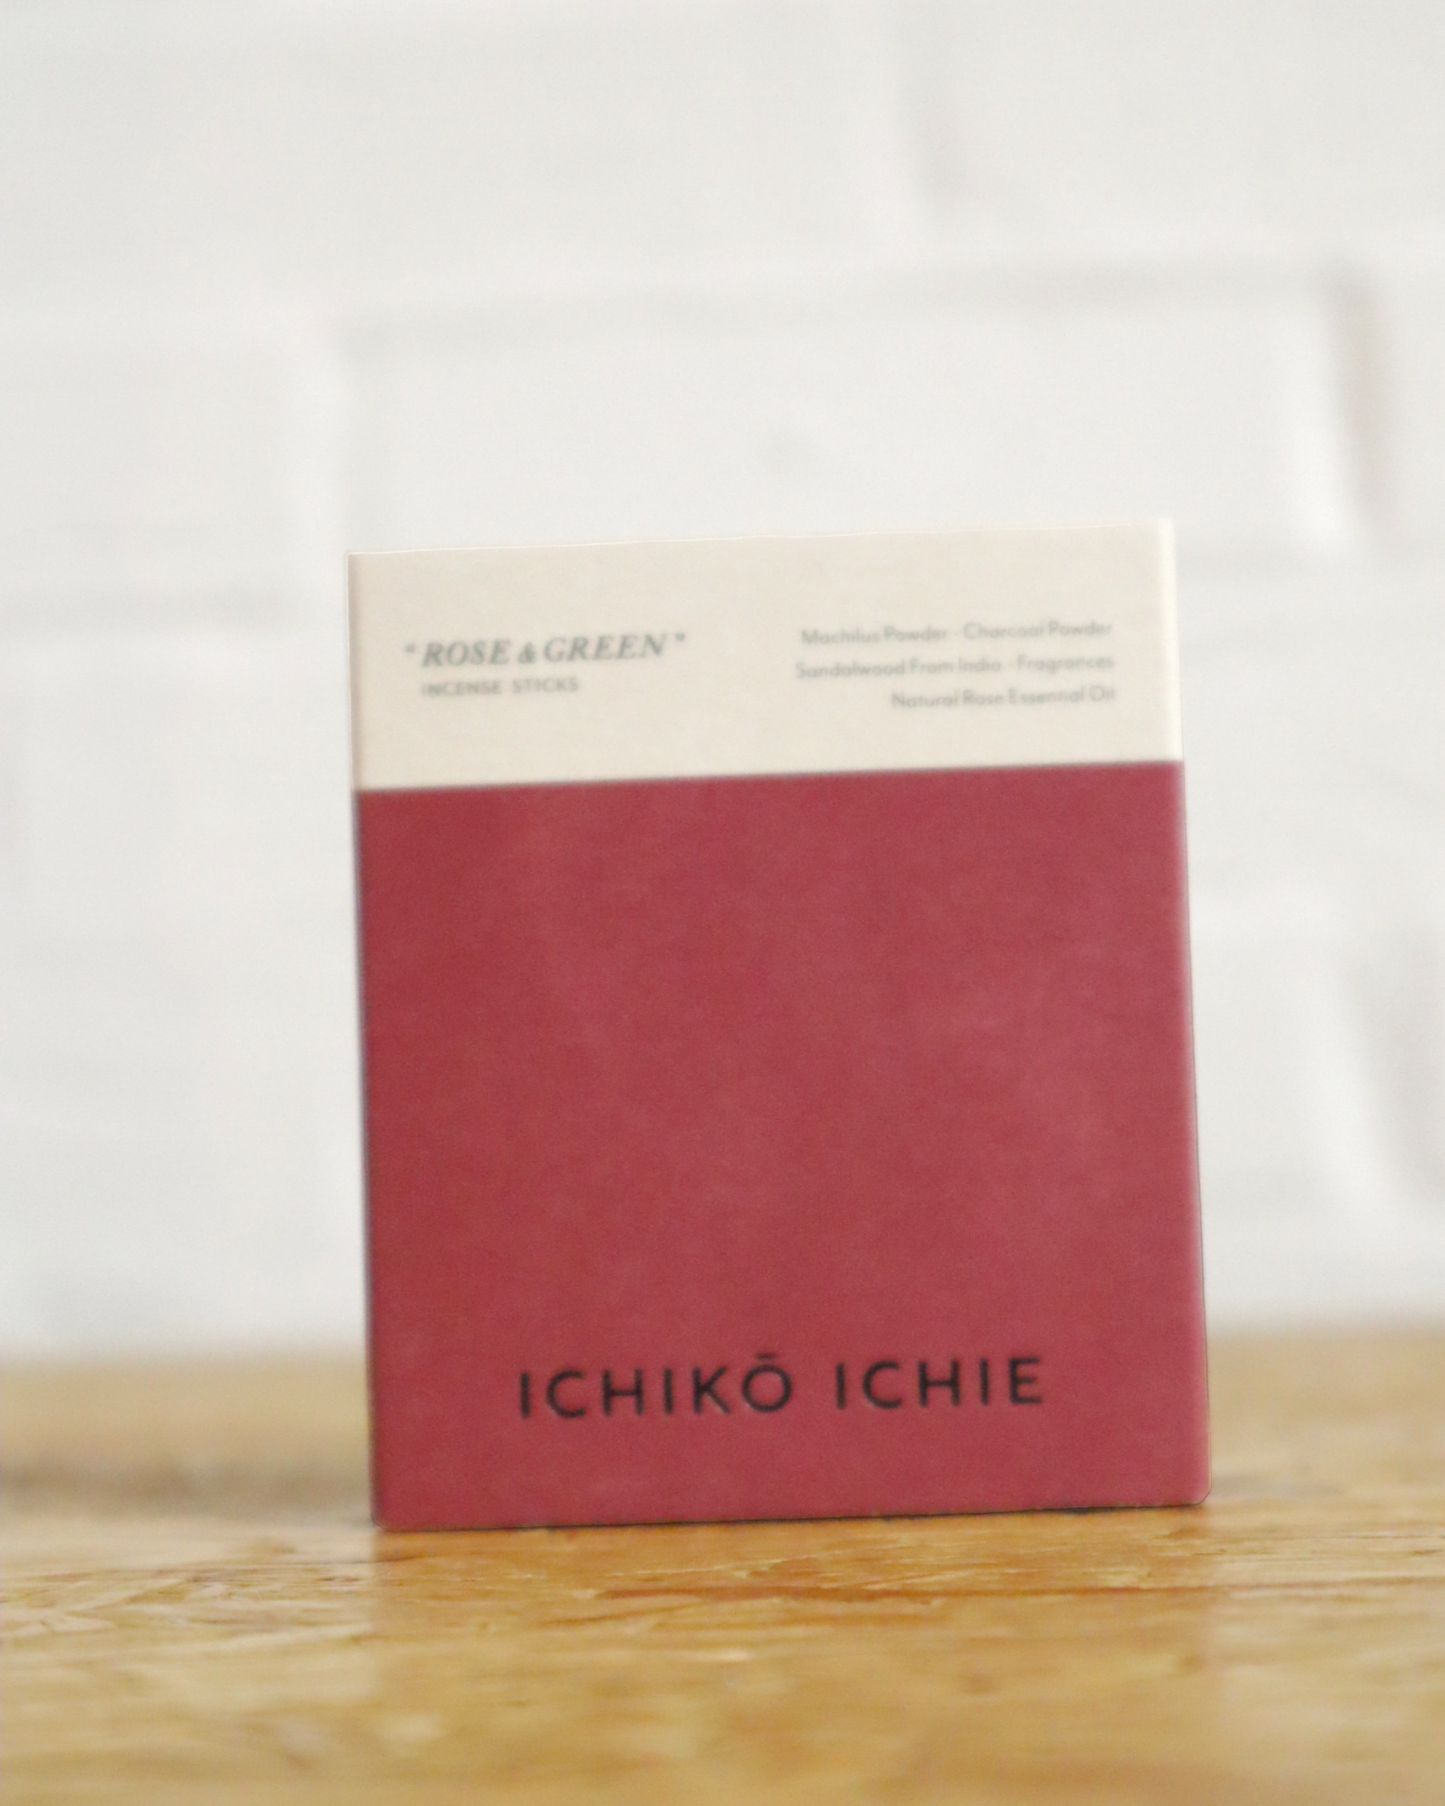 
                  
                    ICHIKO ICHIE Incense "ROSE & GREEN"
                  
                